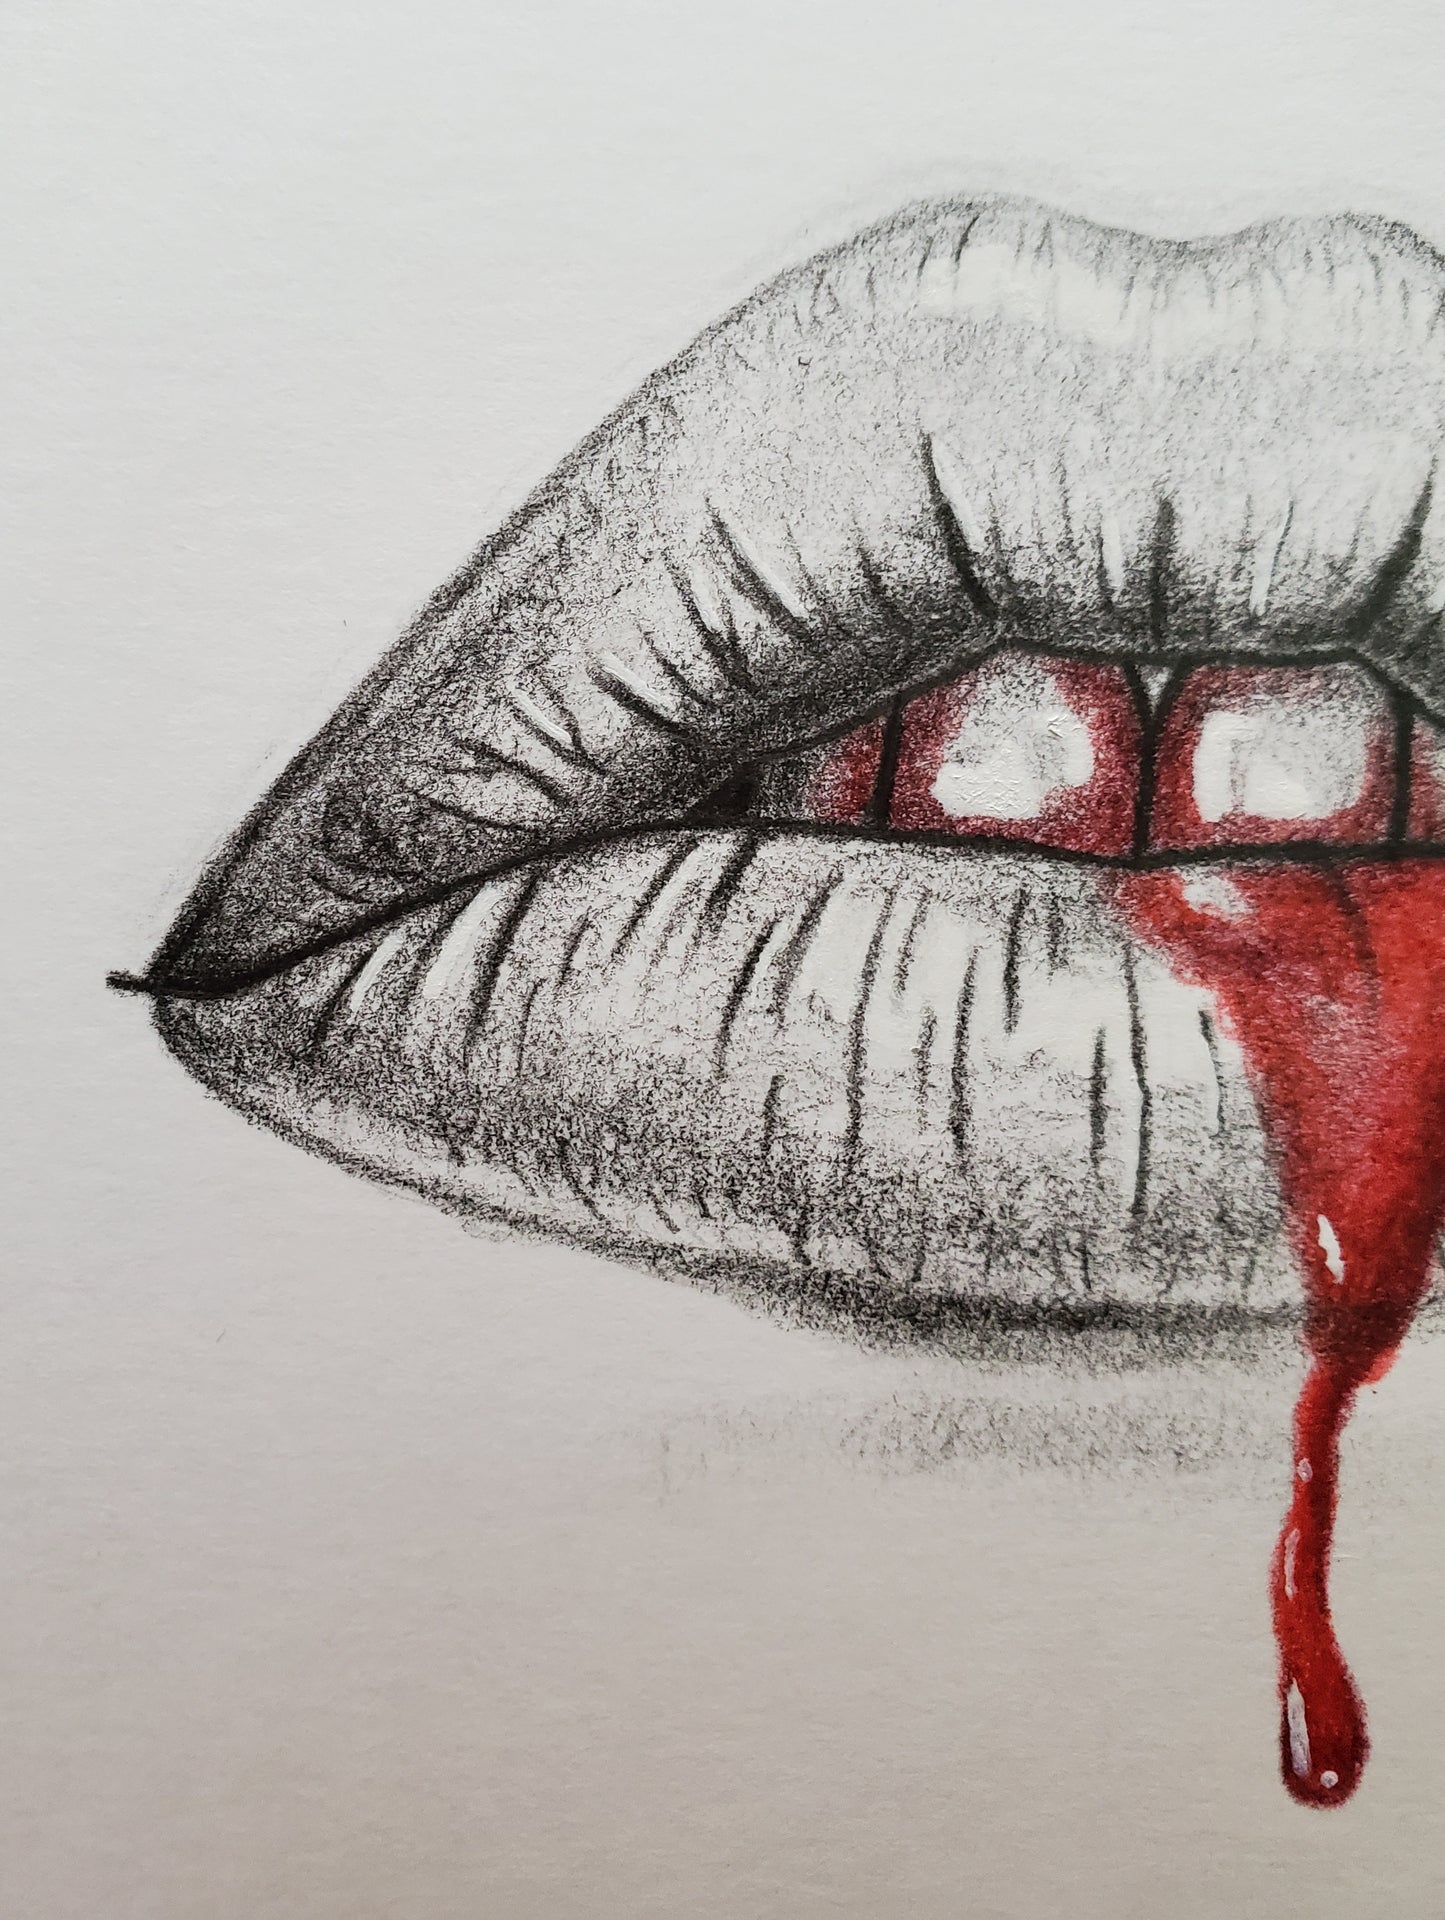 Bleeding Lips Drawing in Vintage Frame